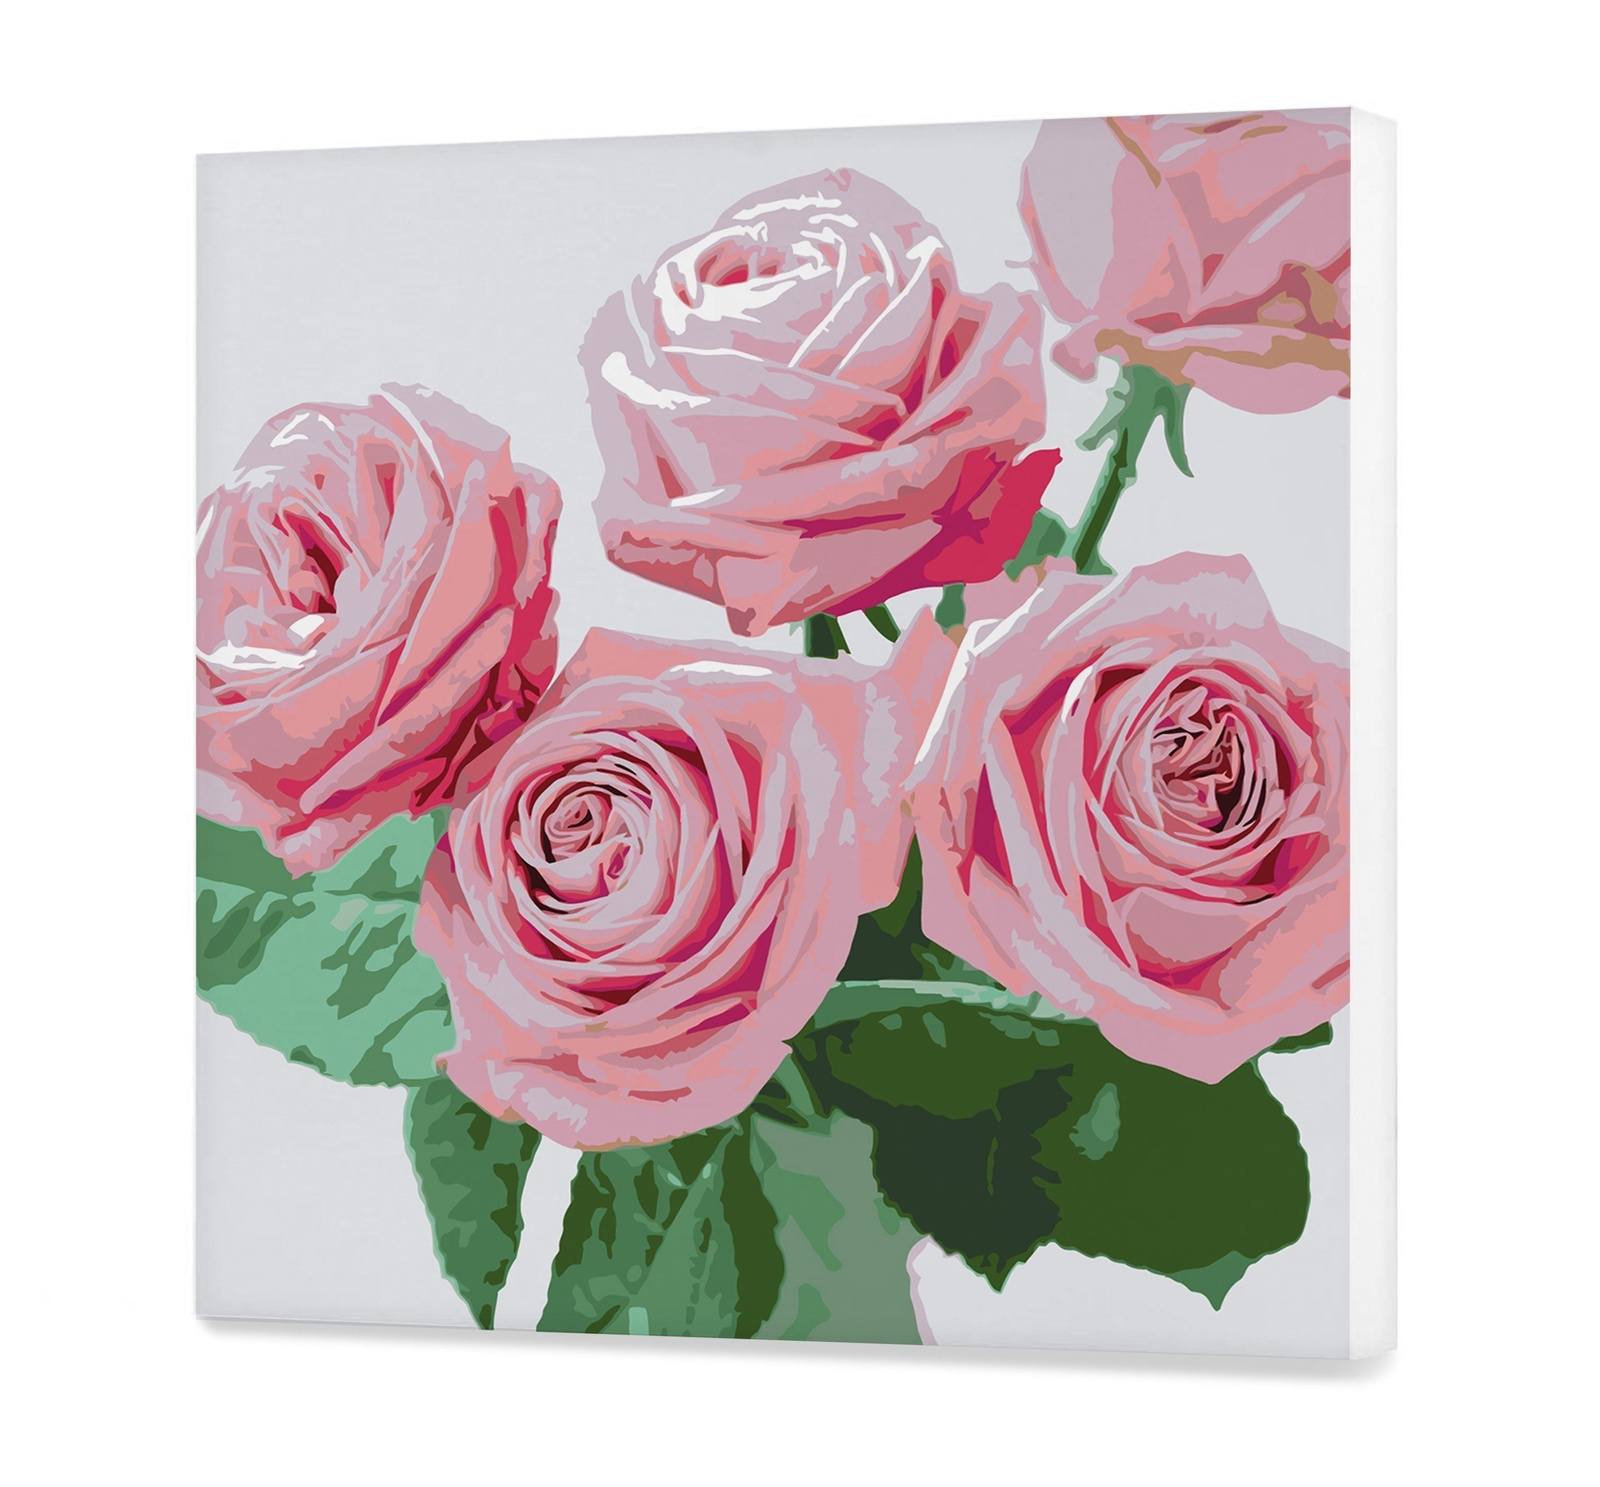 Rosas rosadas (CH0820)